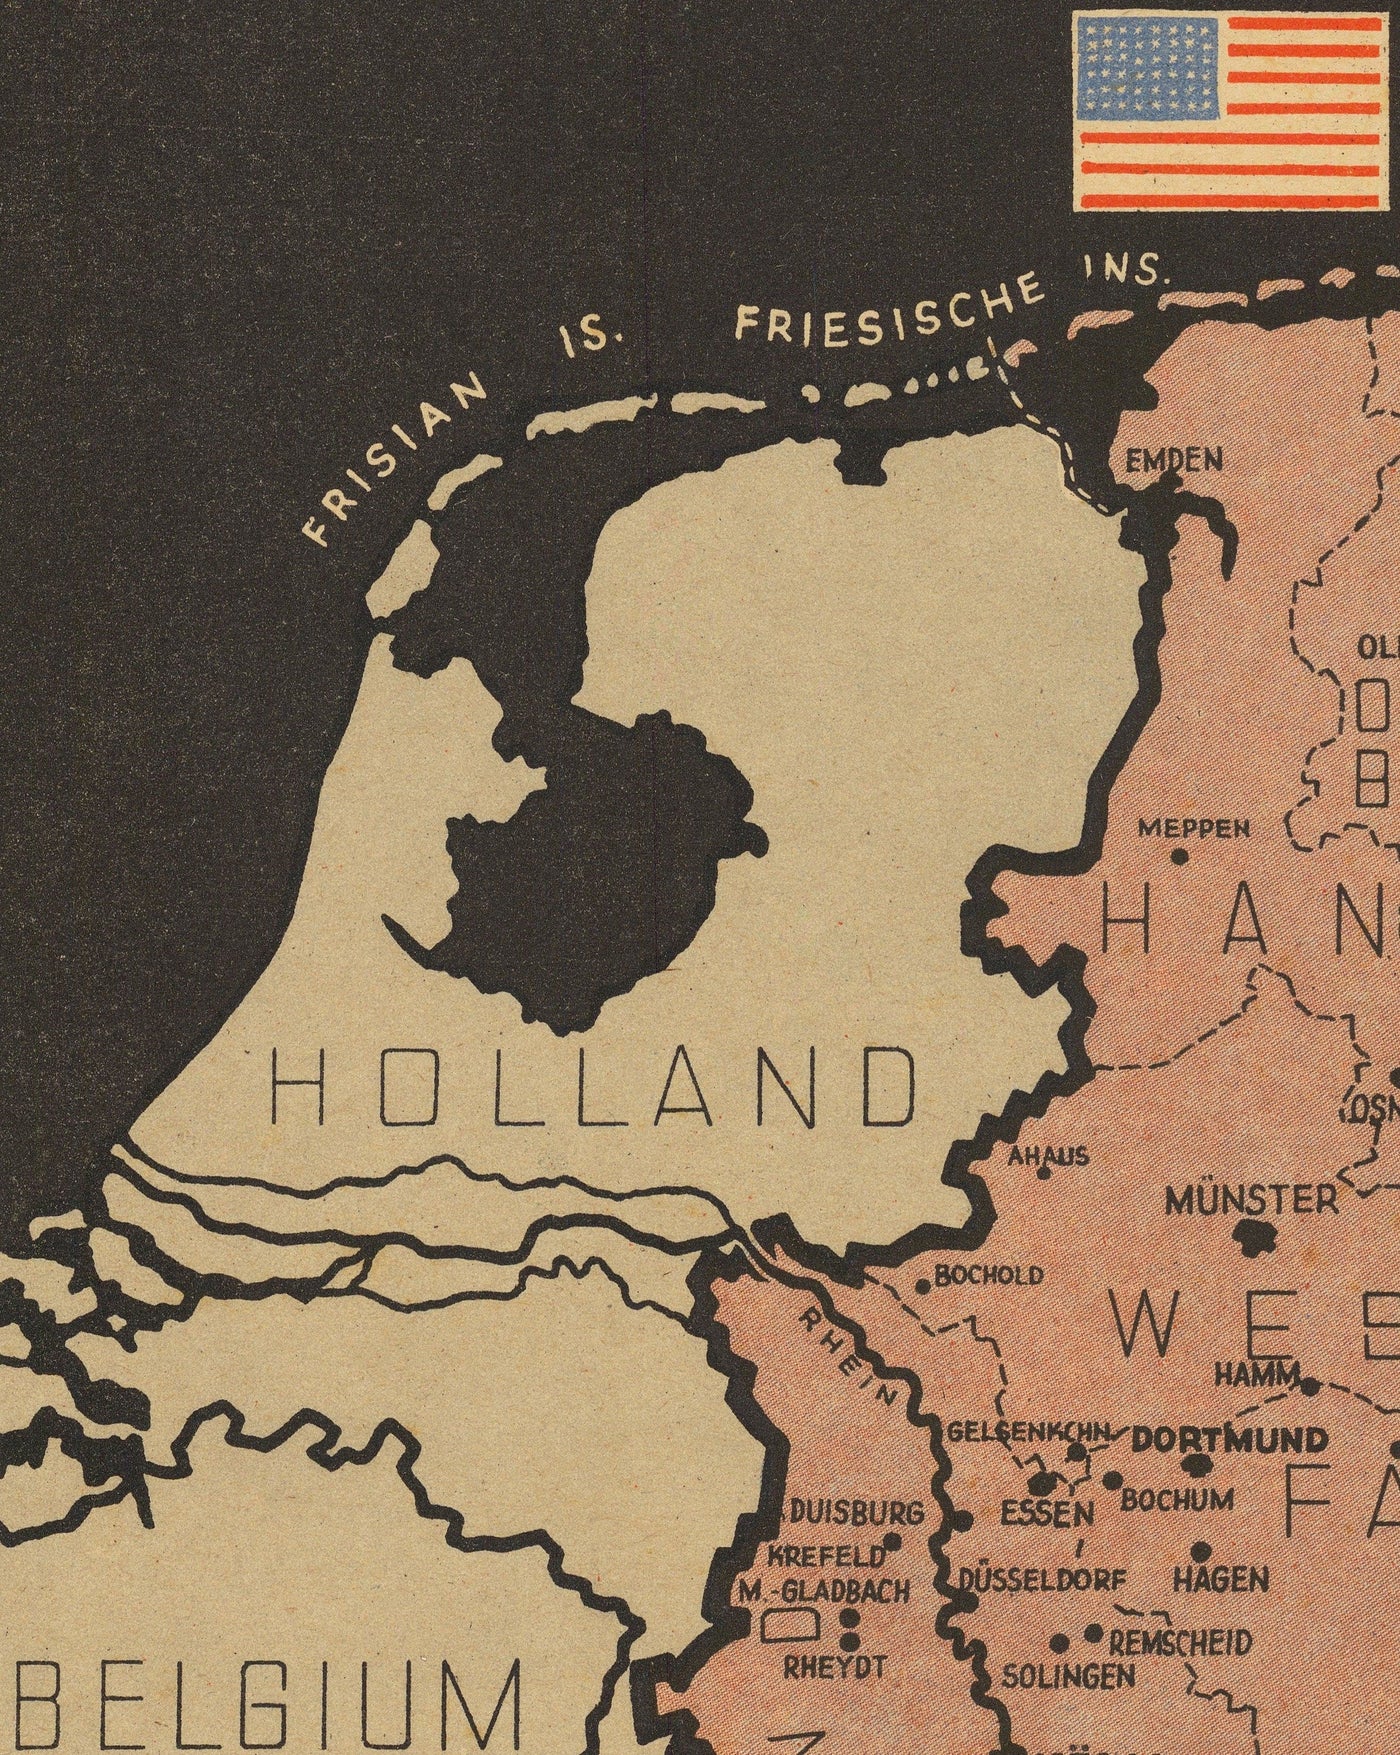 Nazi Allemagne Monde World War 2 Carte - Public Guerre East & West Allemagne Potsdam Conférence Tableau de profession